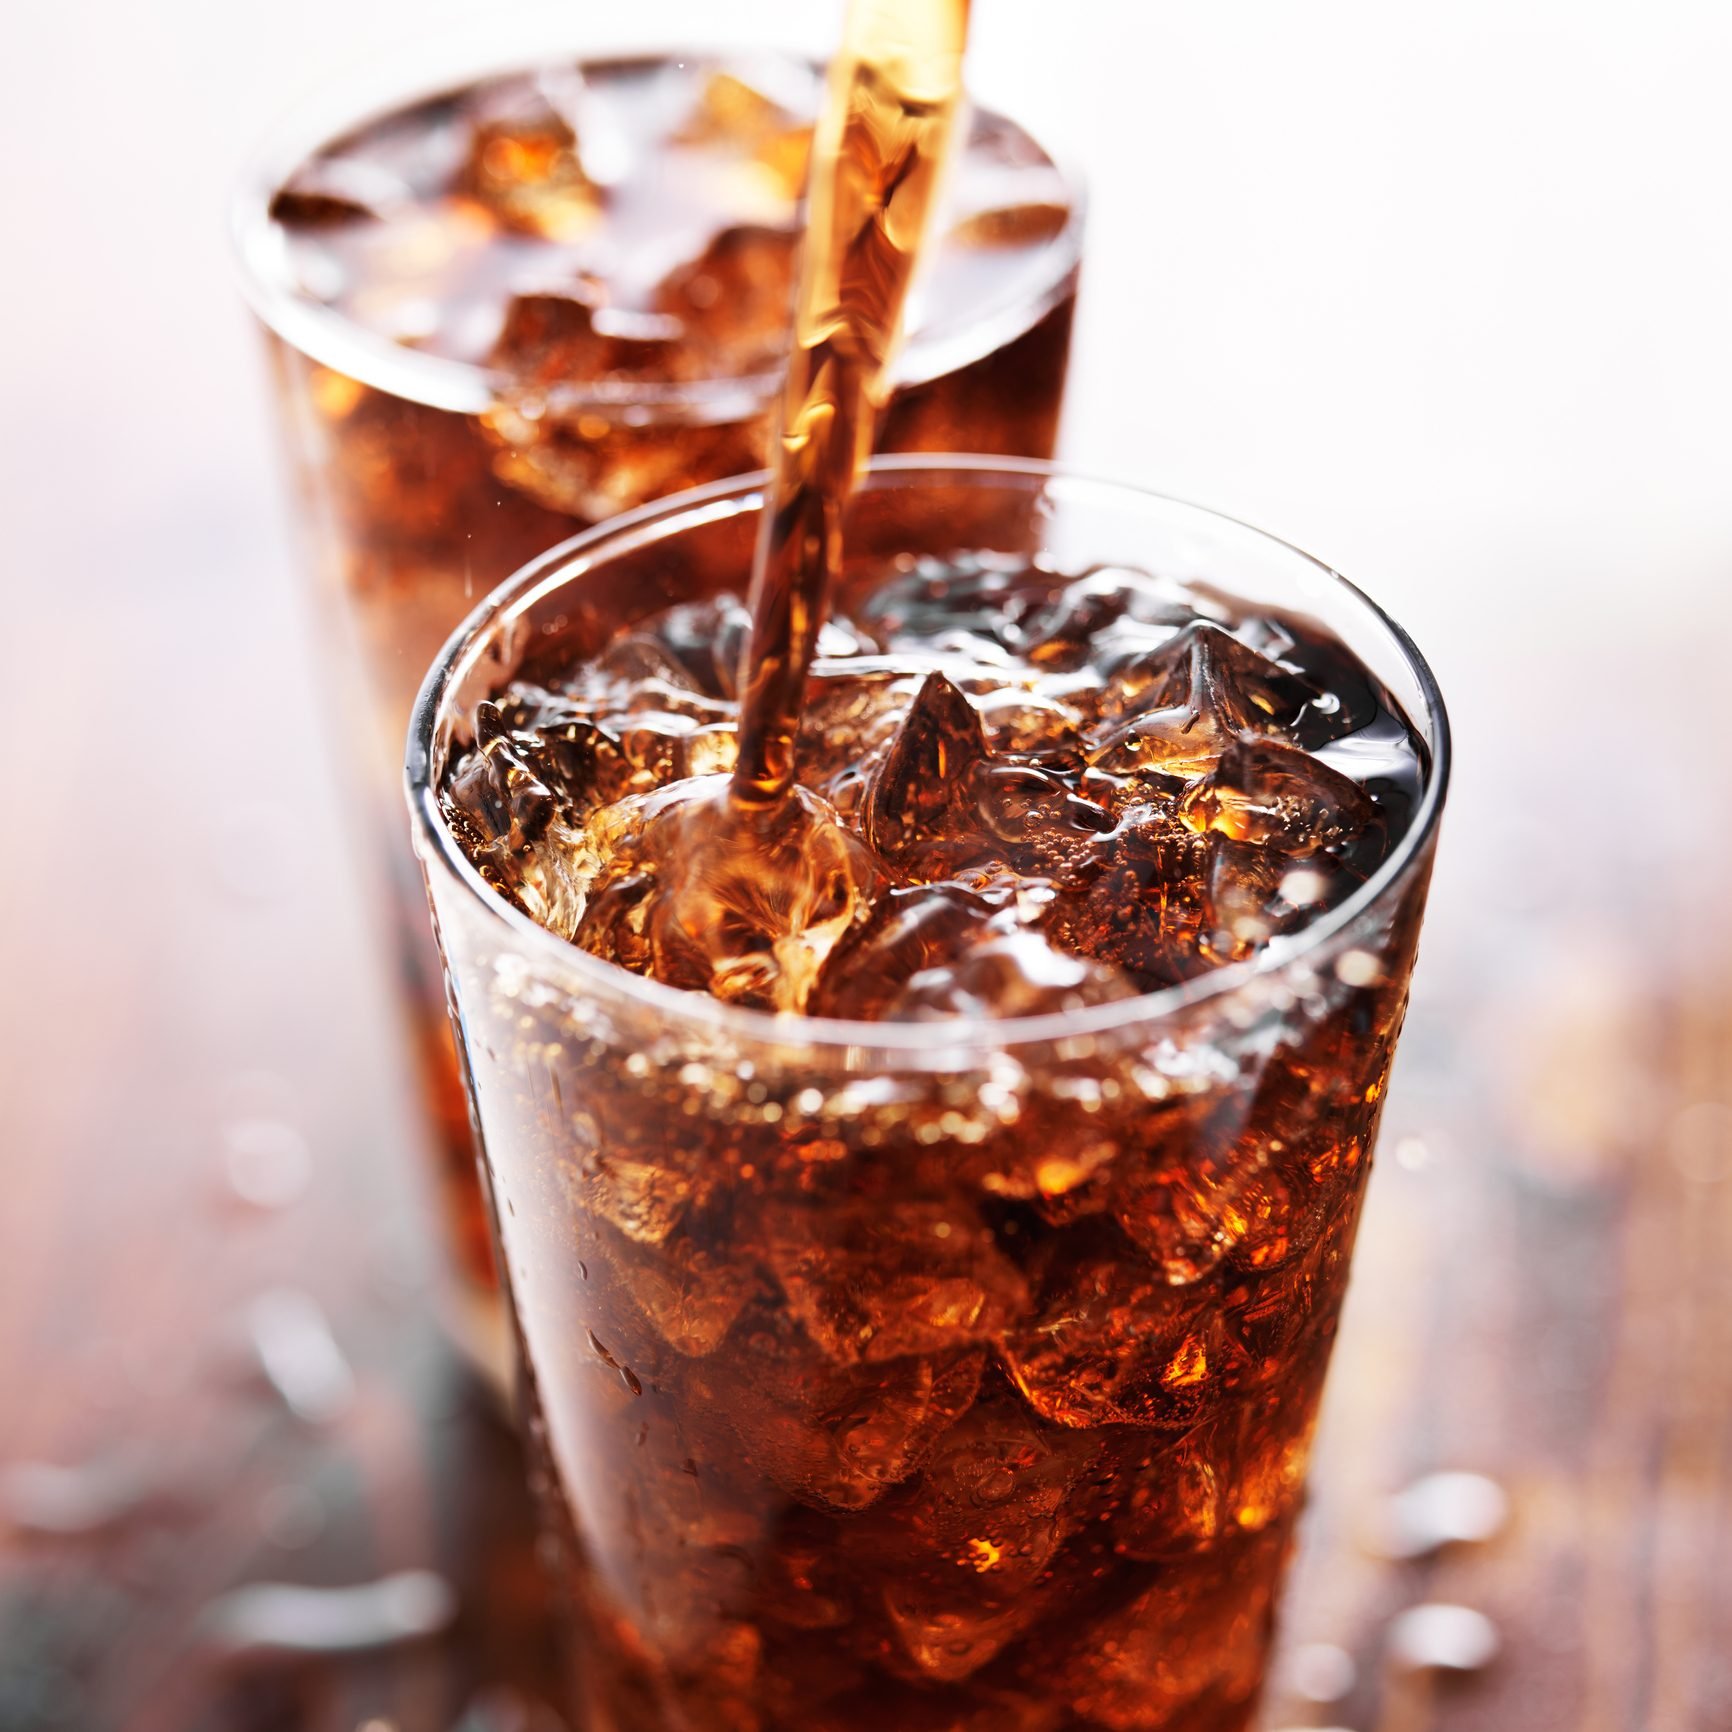 soda in glasses with straws